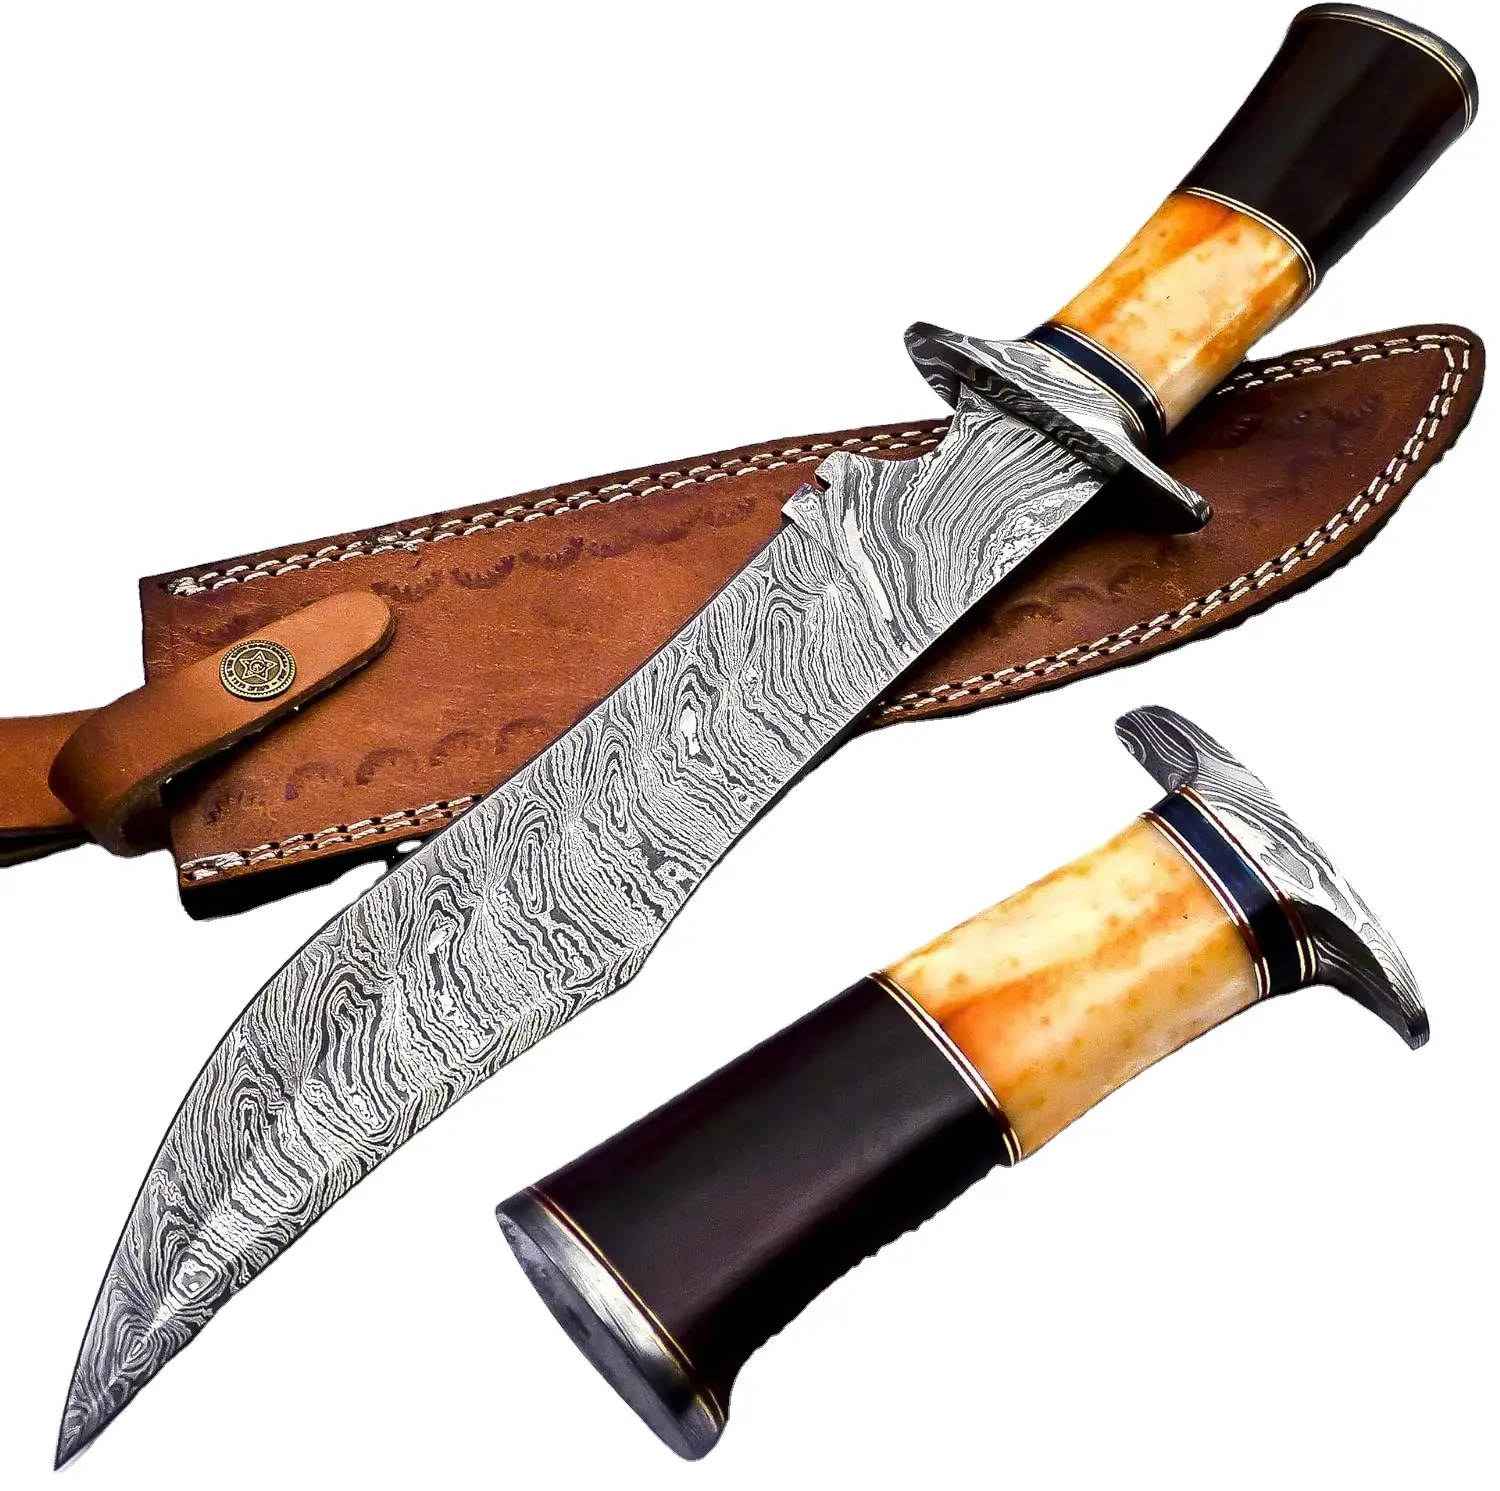 Premium kalite şam çelik güçlü bıçak açık kamp bıçağı avcılar için güzel ahşap kemik kolu Bowie bıçak kılıf ile